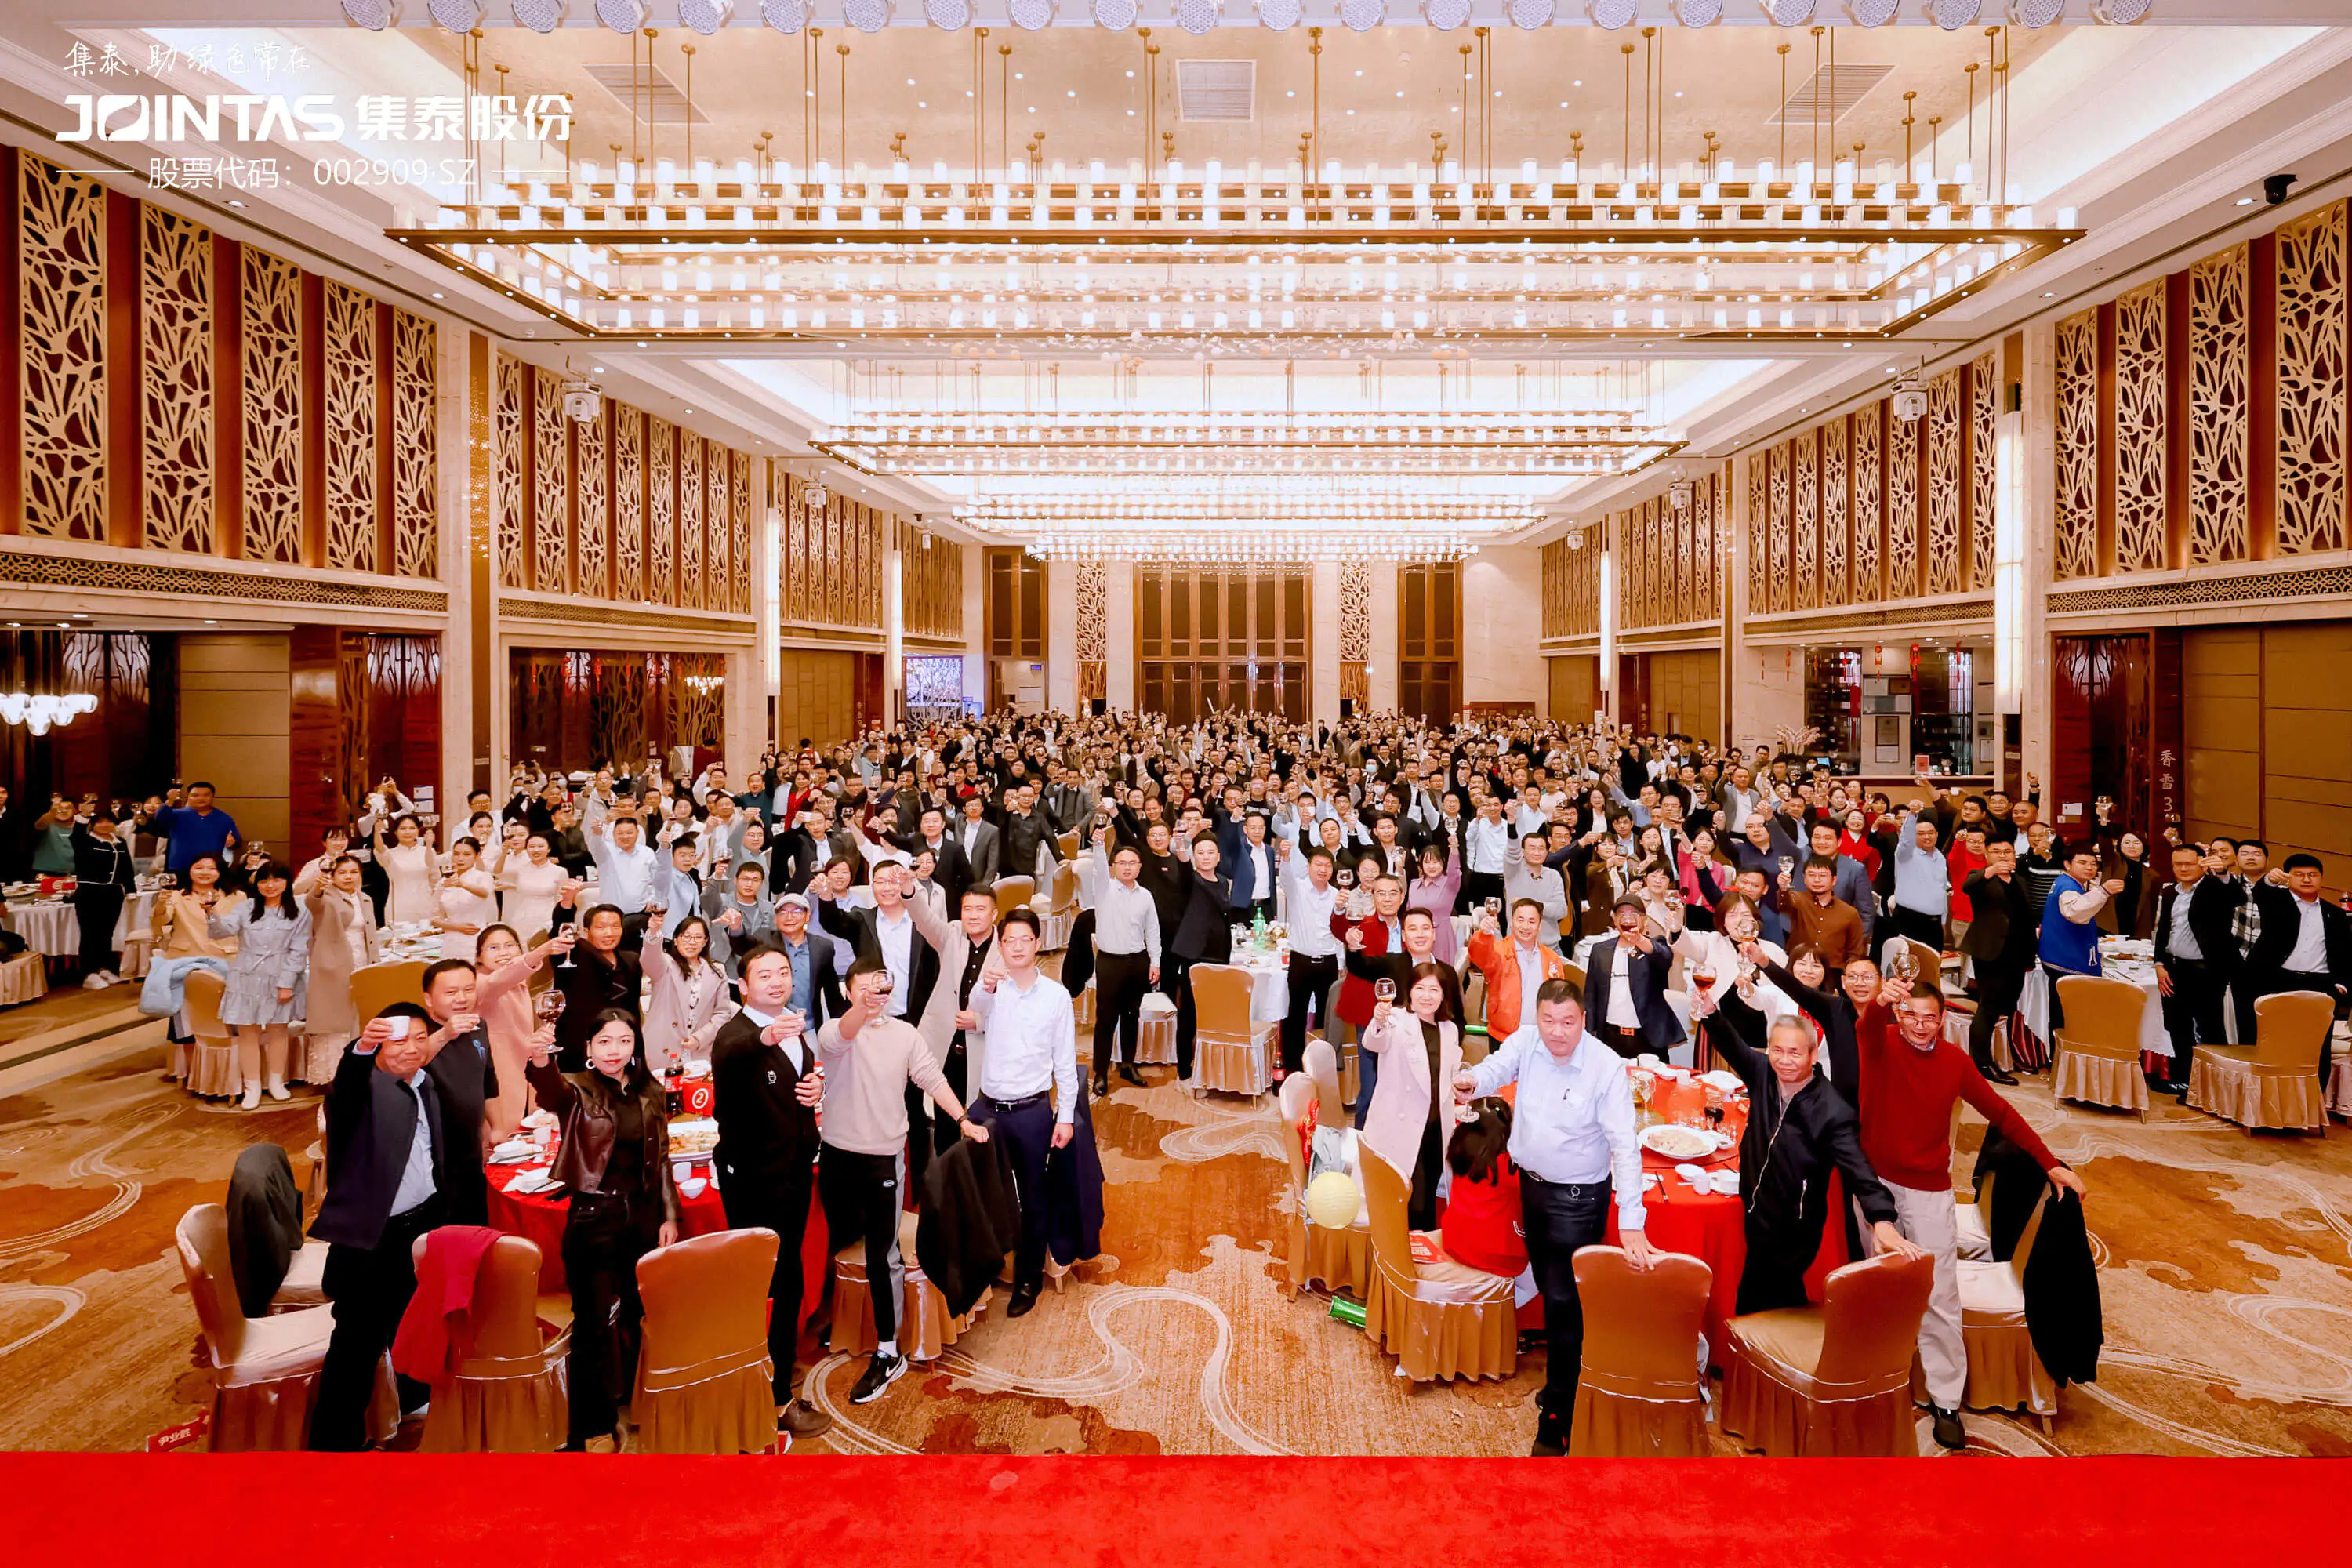 ¡La Conferencia de Elogios Excelentes y la Ceremonia de Premios de Jointas Chemical Co., Ltd. se celebraron grandiosamente en Guangzhou!